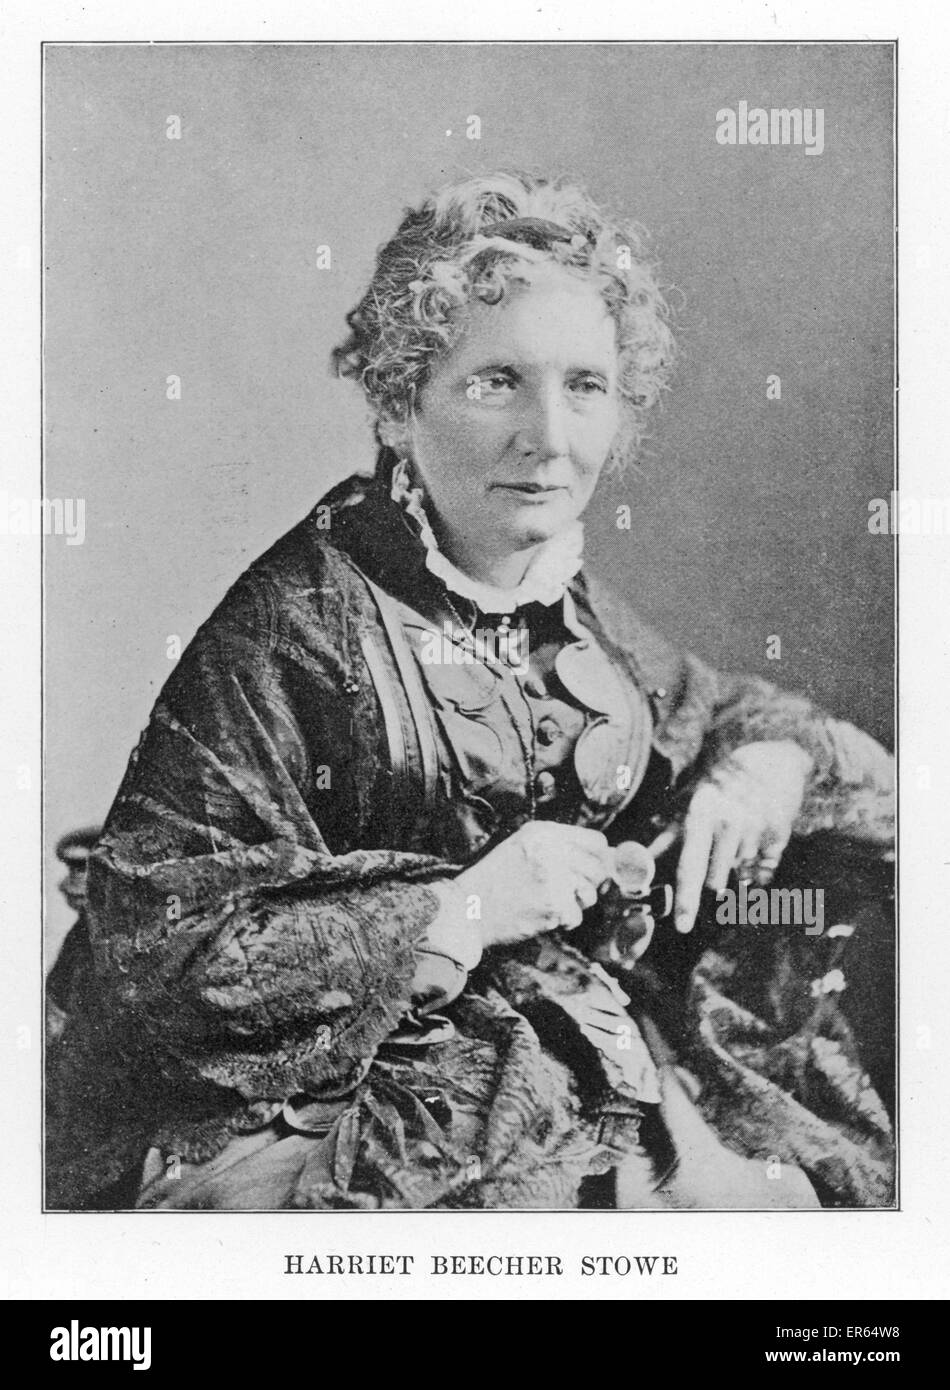 HARRIET Beecher Stowe autore americano, nee Beecher. Ardente verità. Autore della capanna dello zio Tom (1851-2). 1811 - 1896 Foto Stock